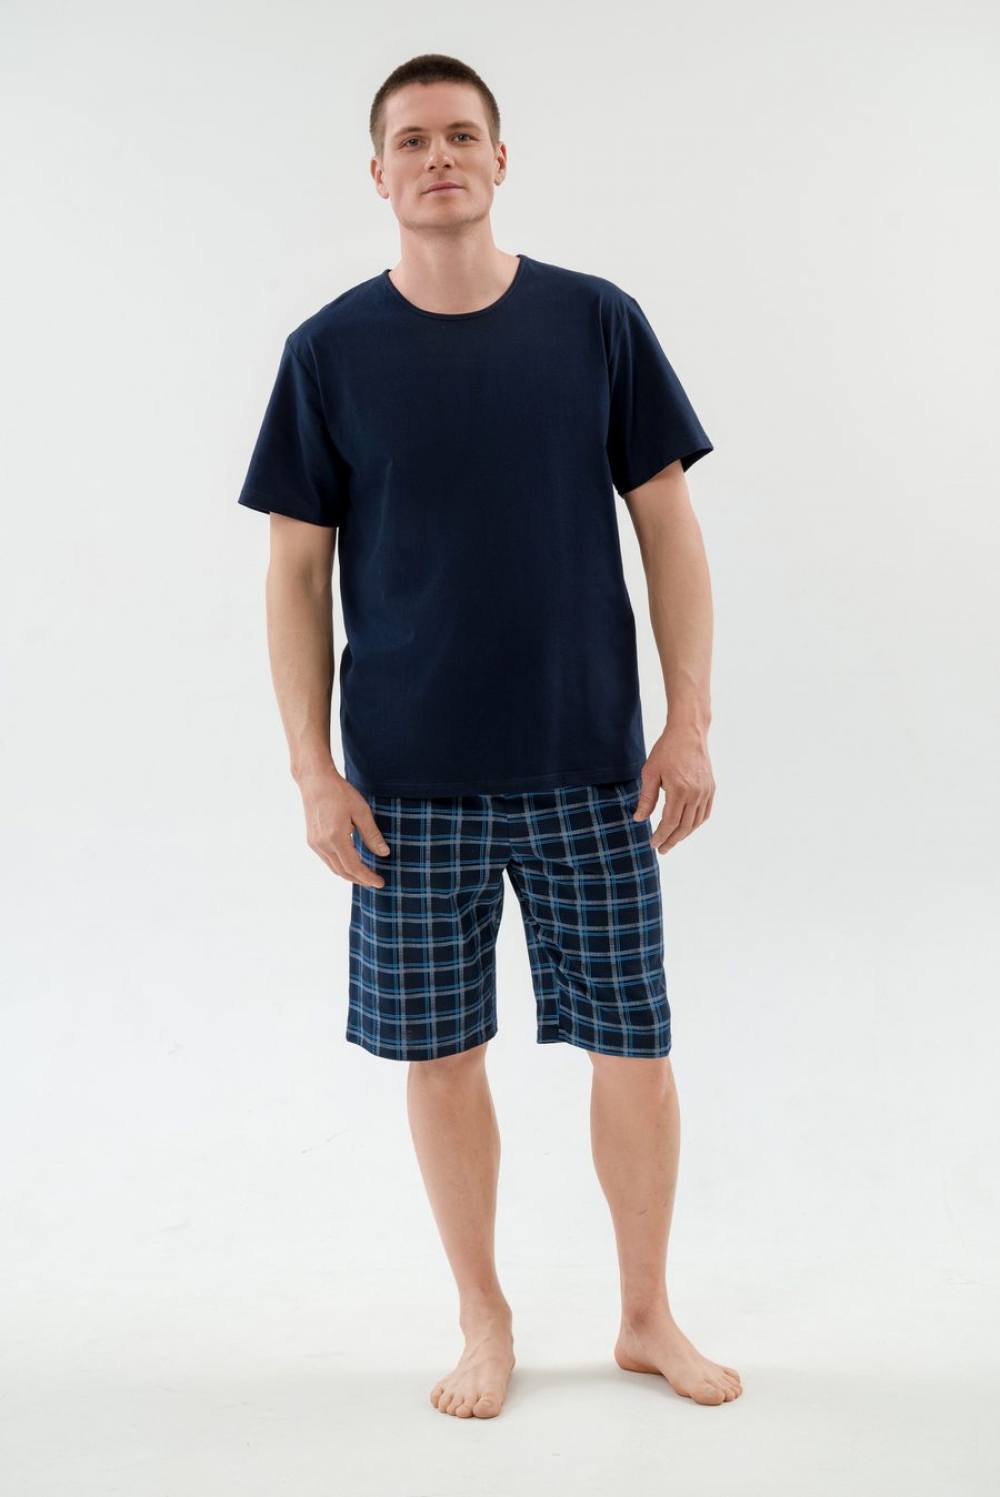 Пижама мужская с шортами. Артикул 000005434